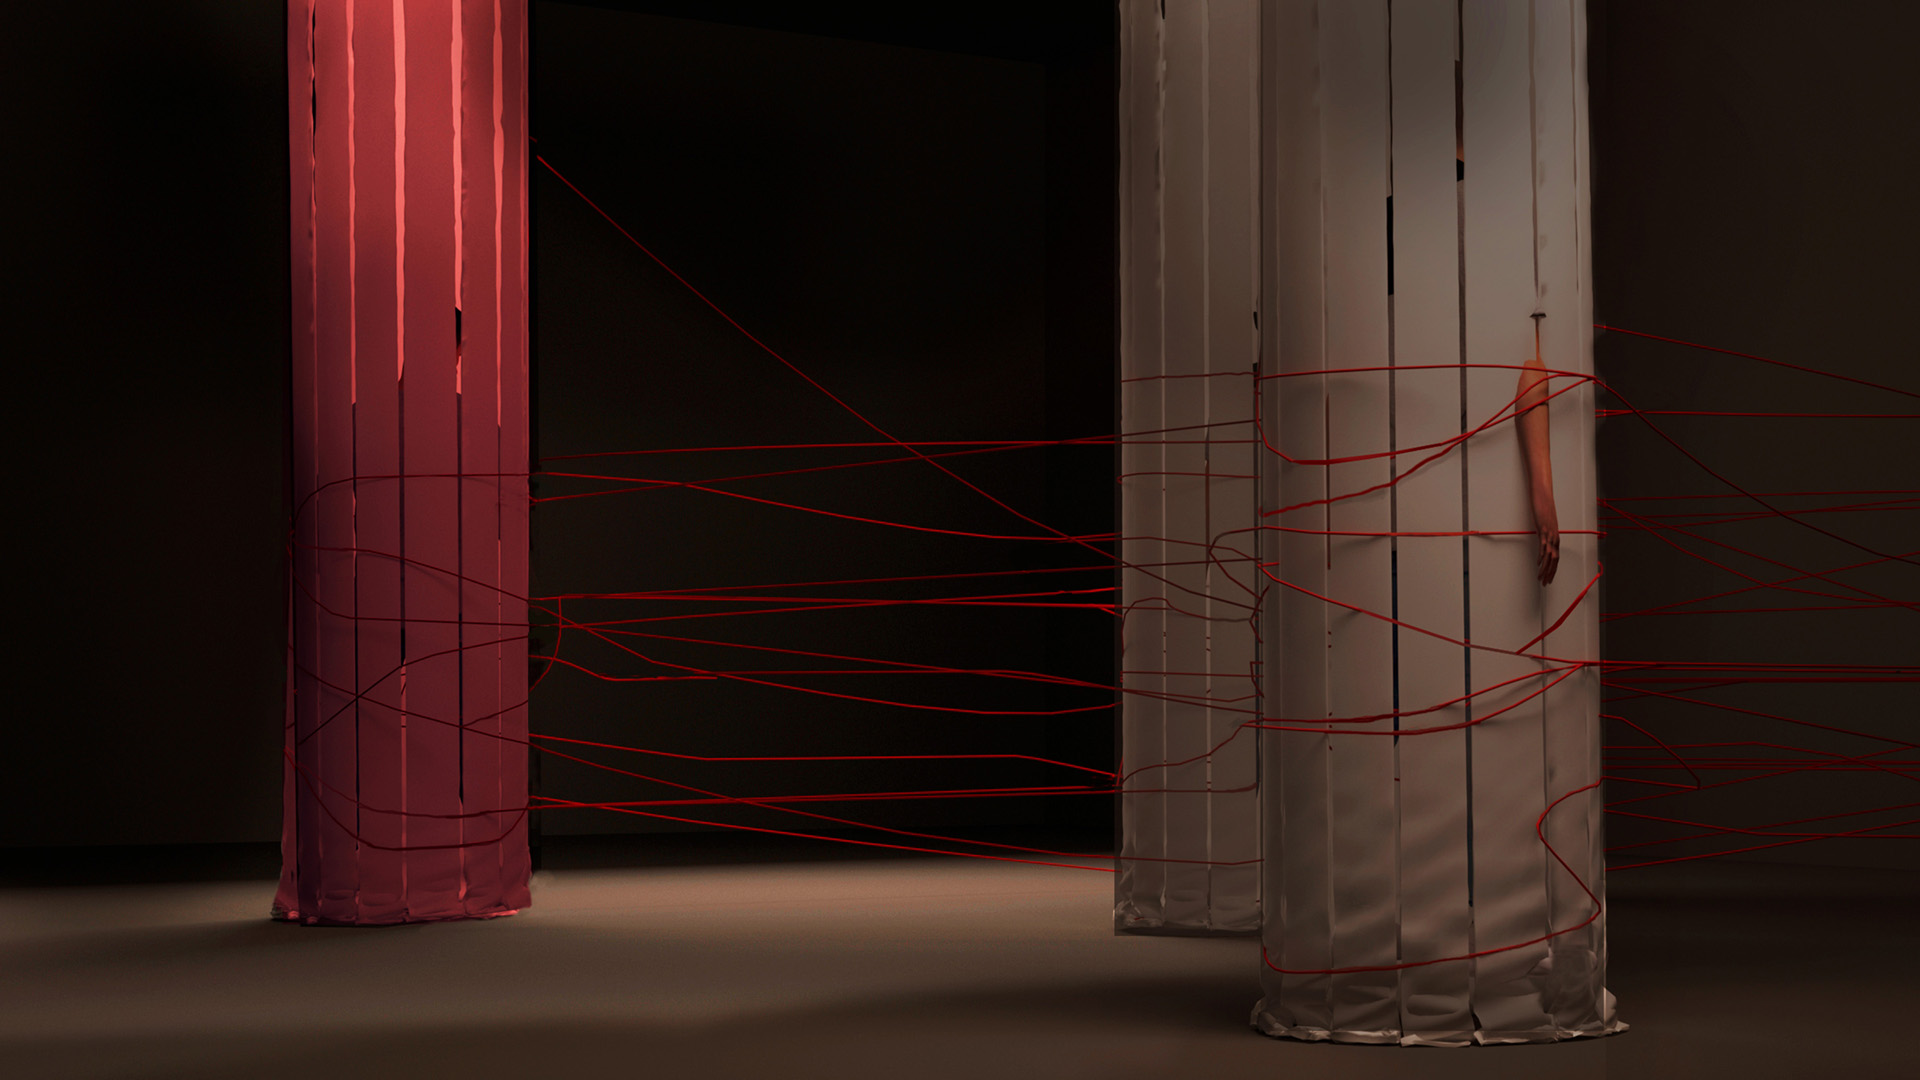 Wizualizacja scenografii ukazująca projekt z pracowni kierunkowej. Obraz przedstawia zawieszone w przestrzeni tuby wykonane z materiału, pomiędzy którymi wije się poplątana czerwona nić